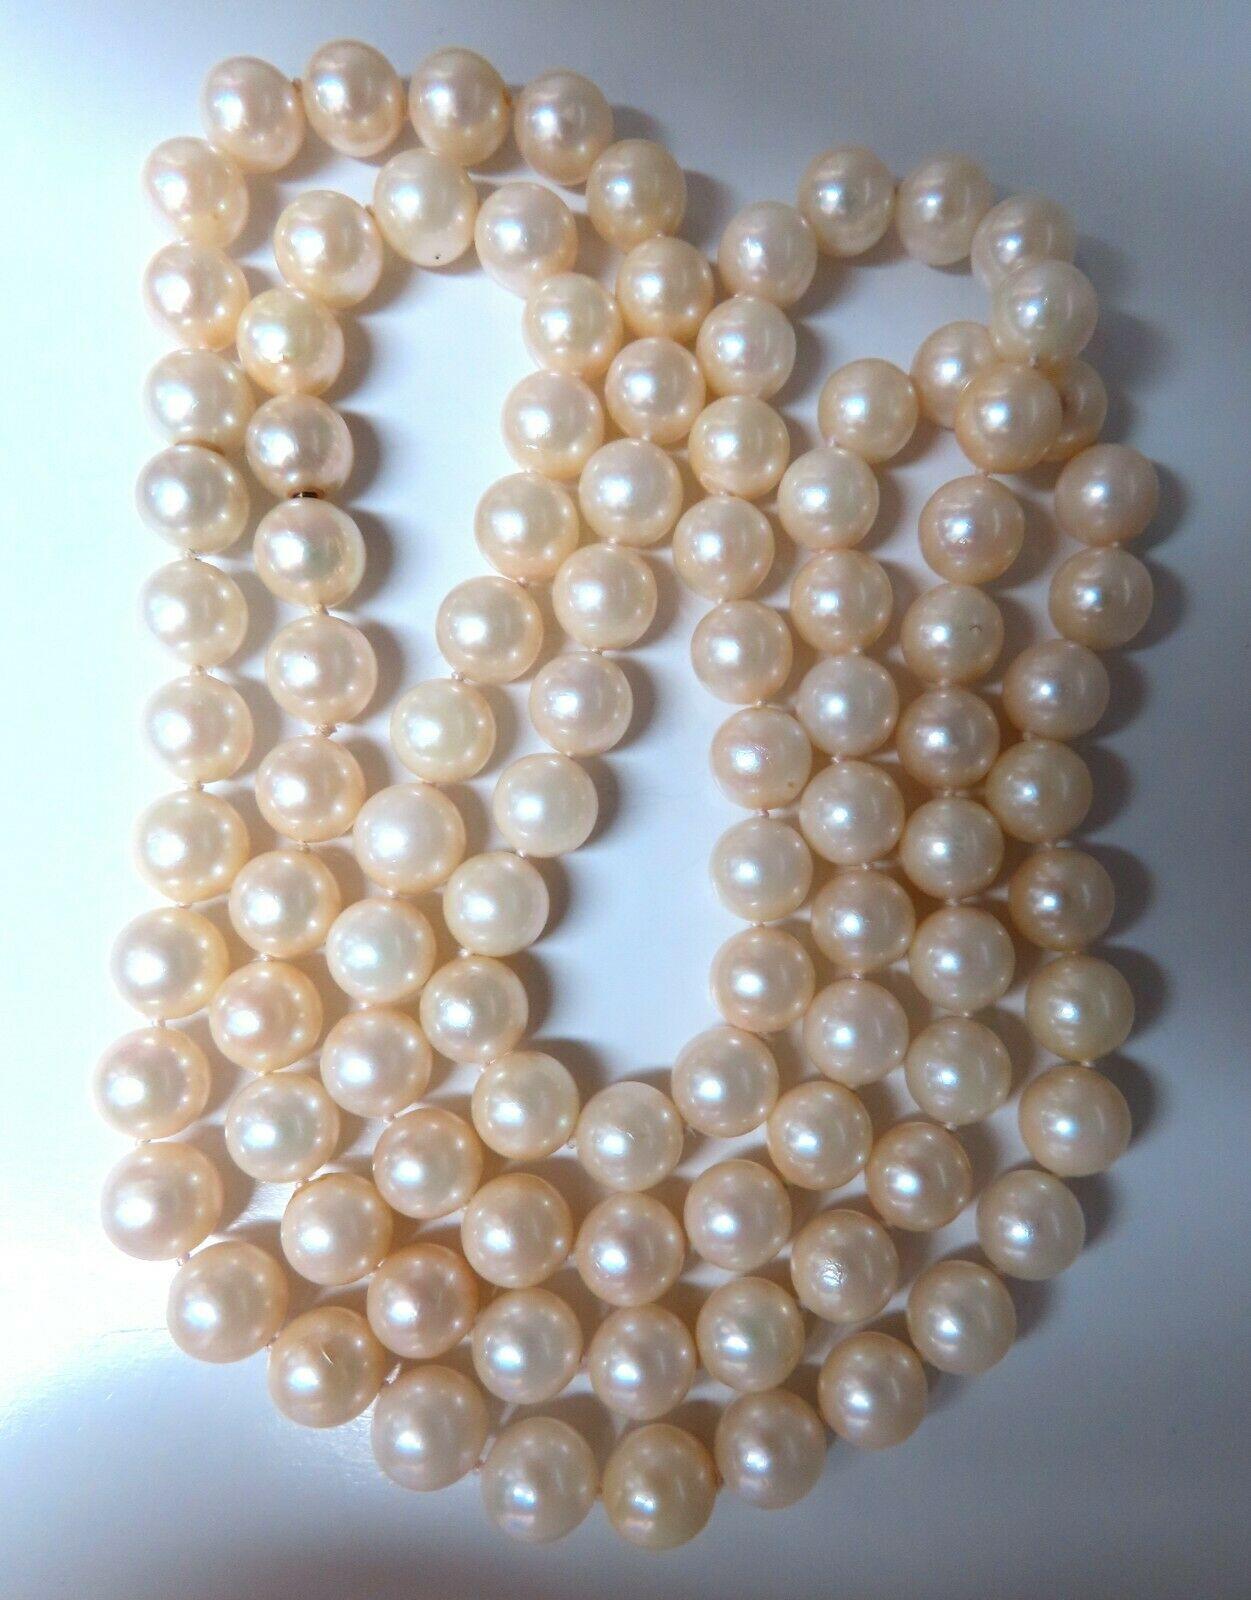 hobby lobby pearls